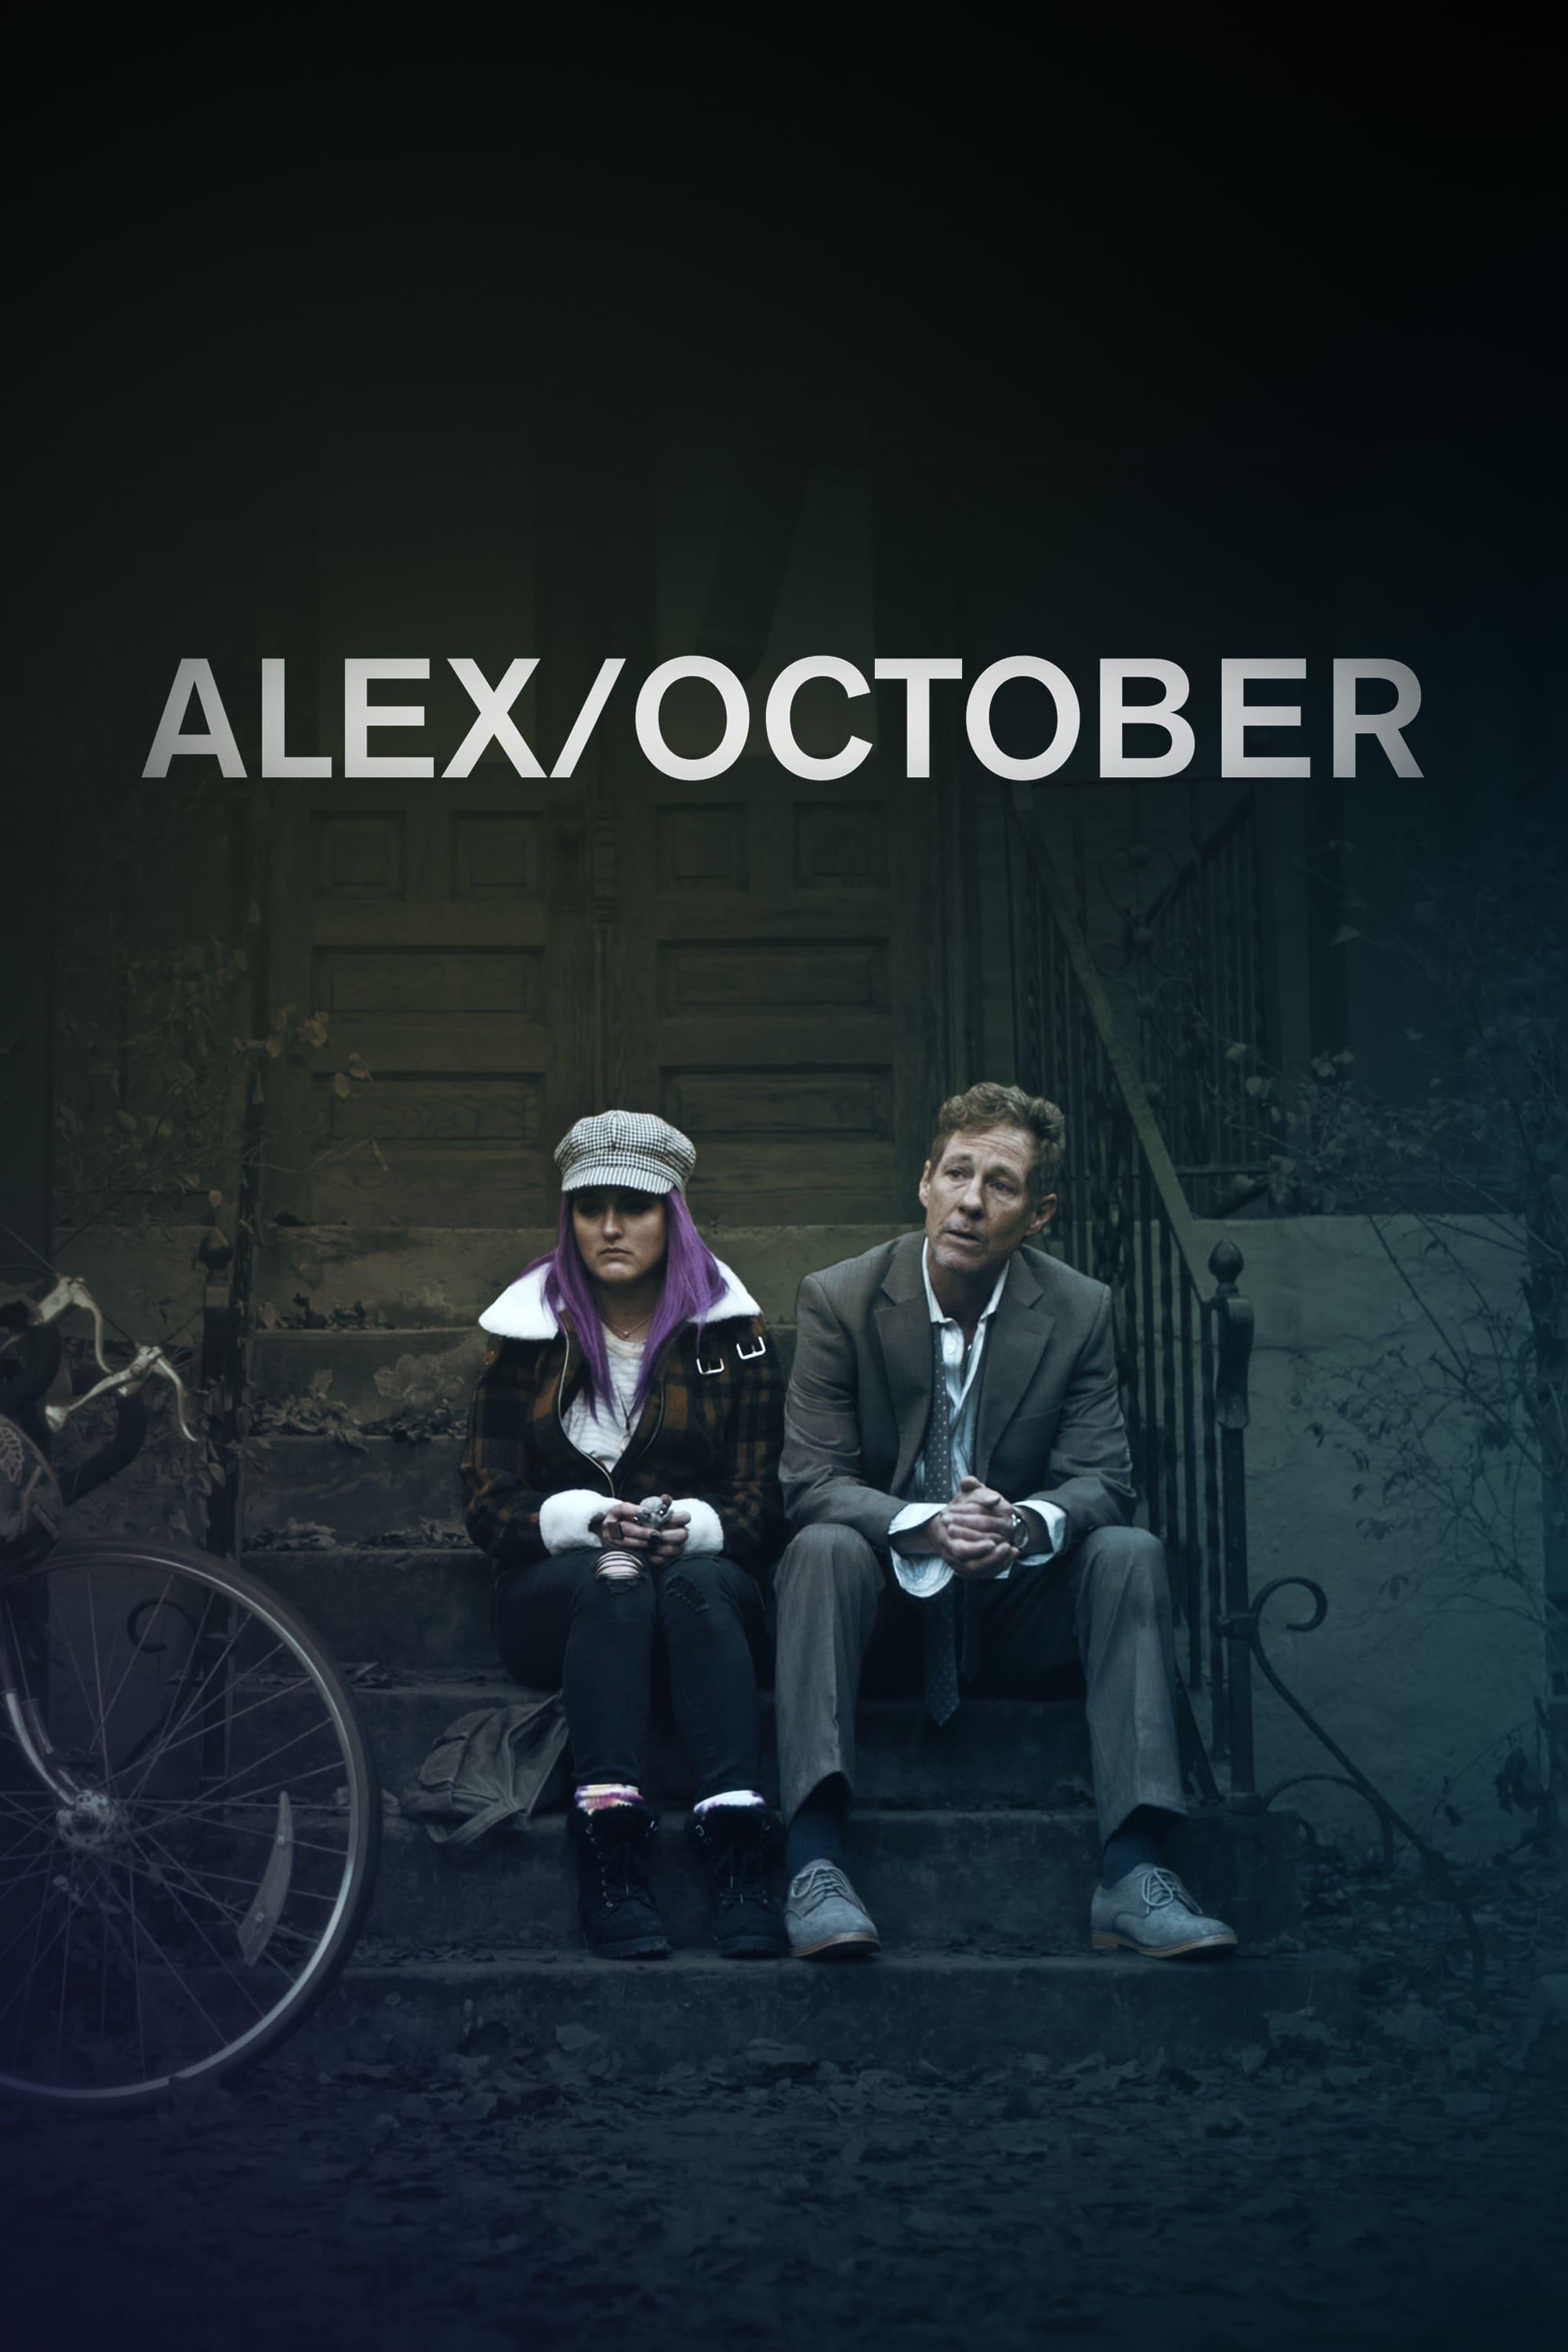 Alex/October poster